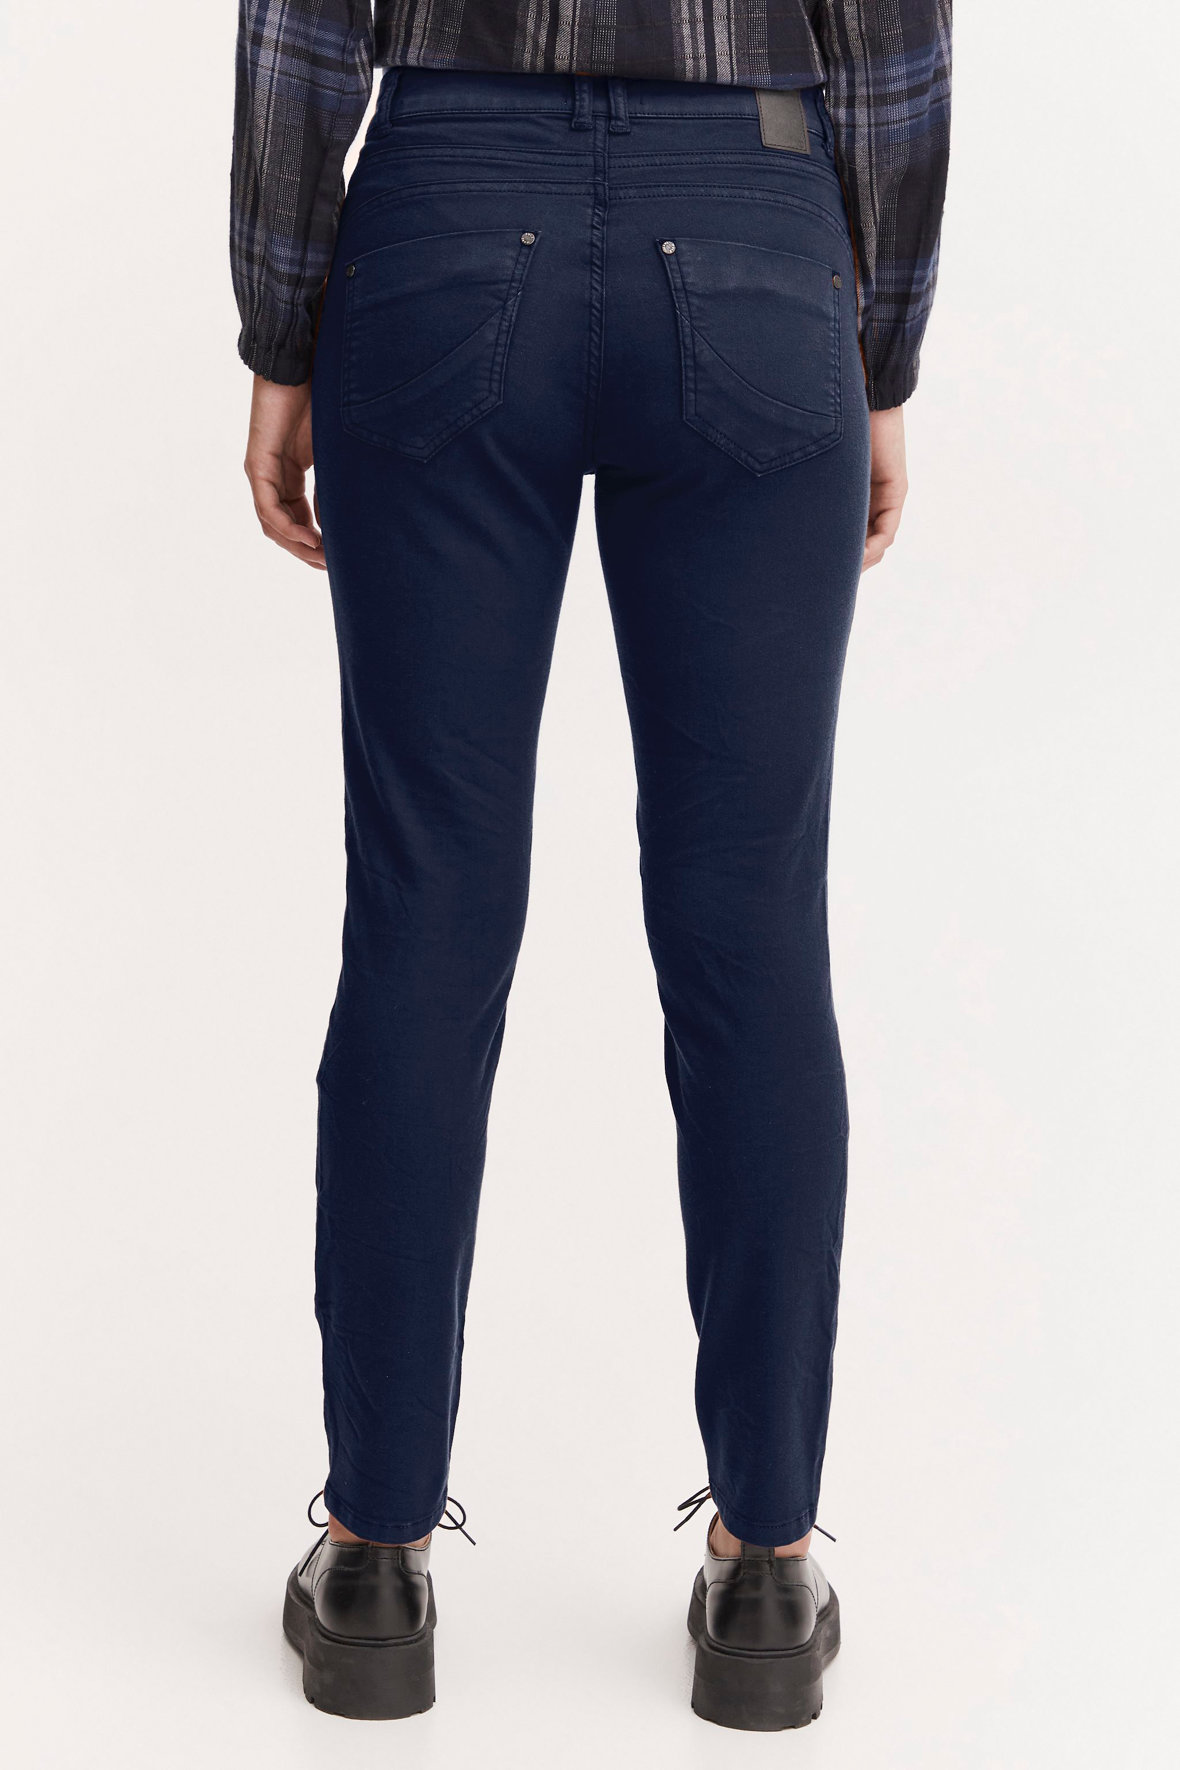 Pulz Jeans pzRosita hw pant jeans i mørkeblå med 7/8 dels Hos Lohse